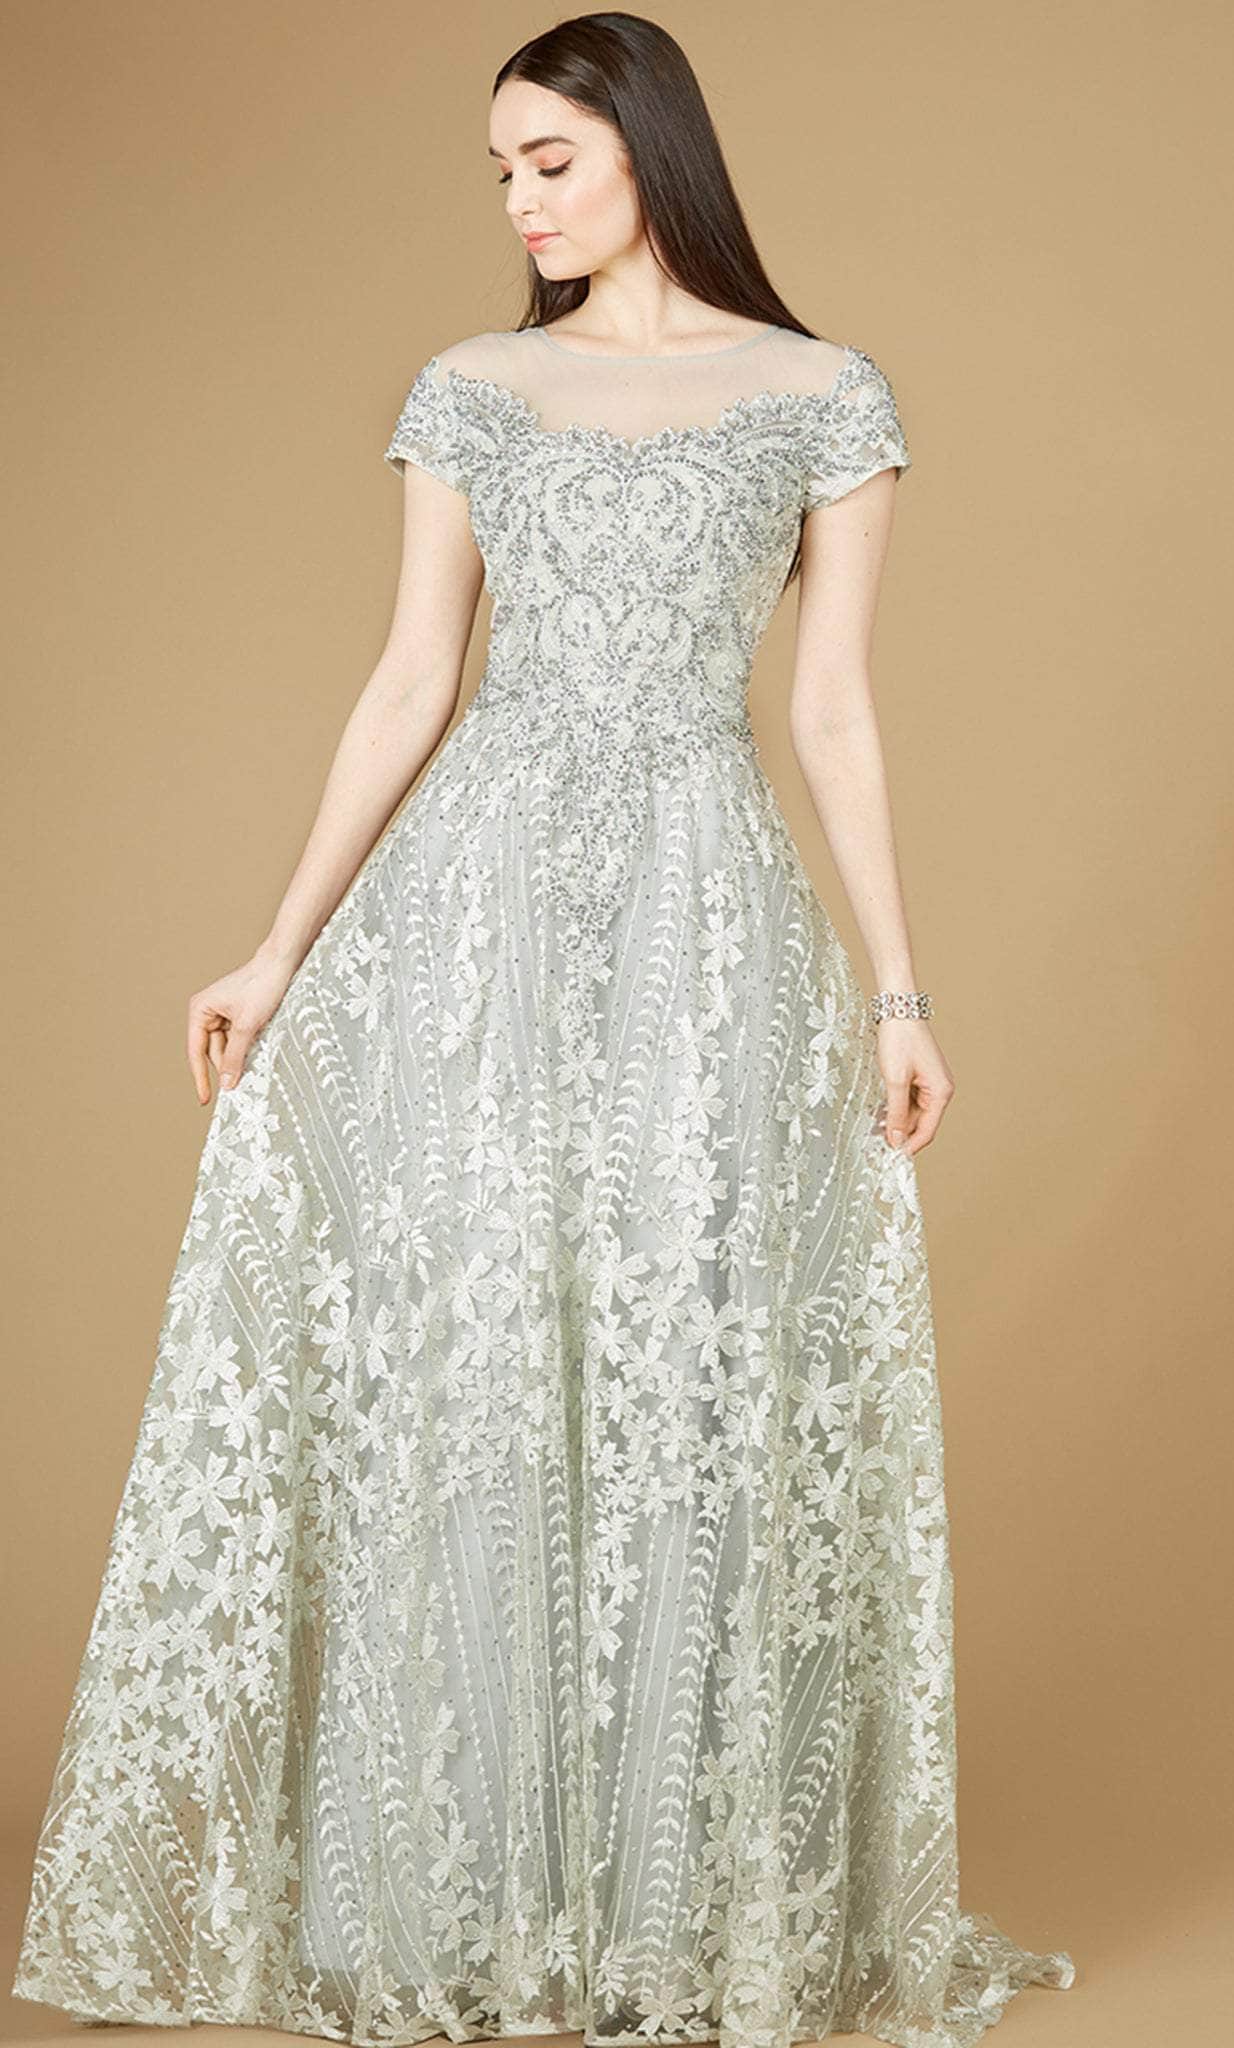 Lara Dresses 29235 - Floral Embellished Formal Gown
